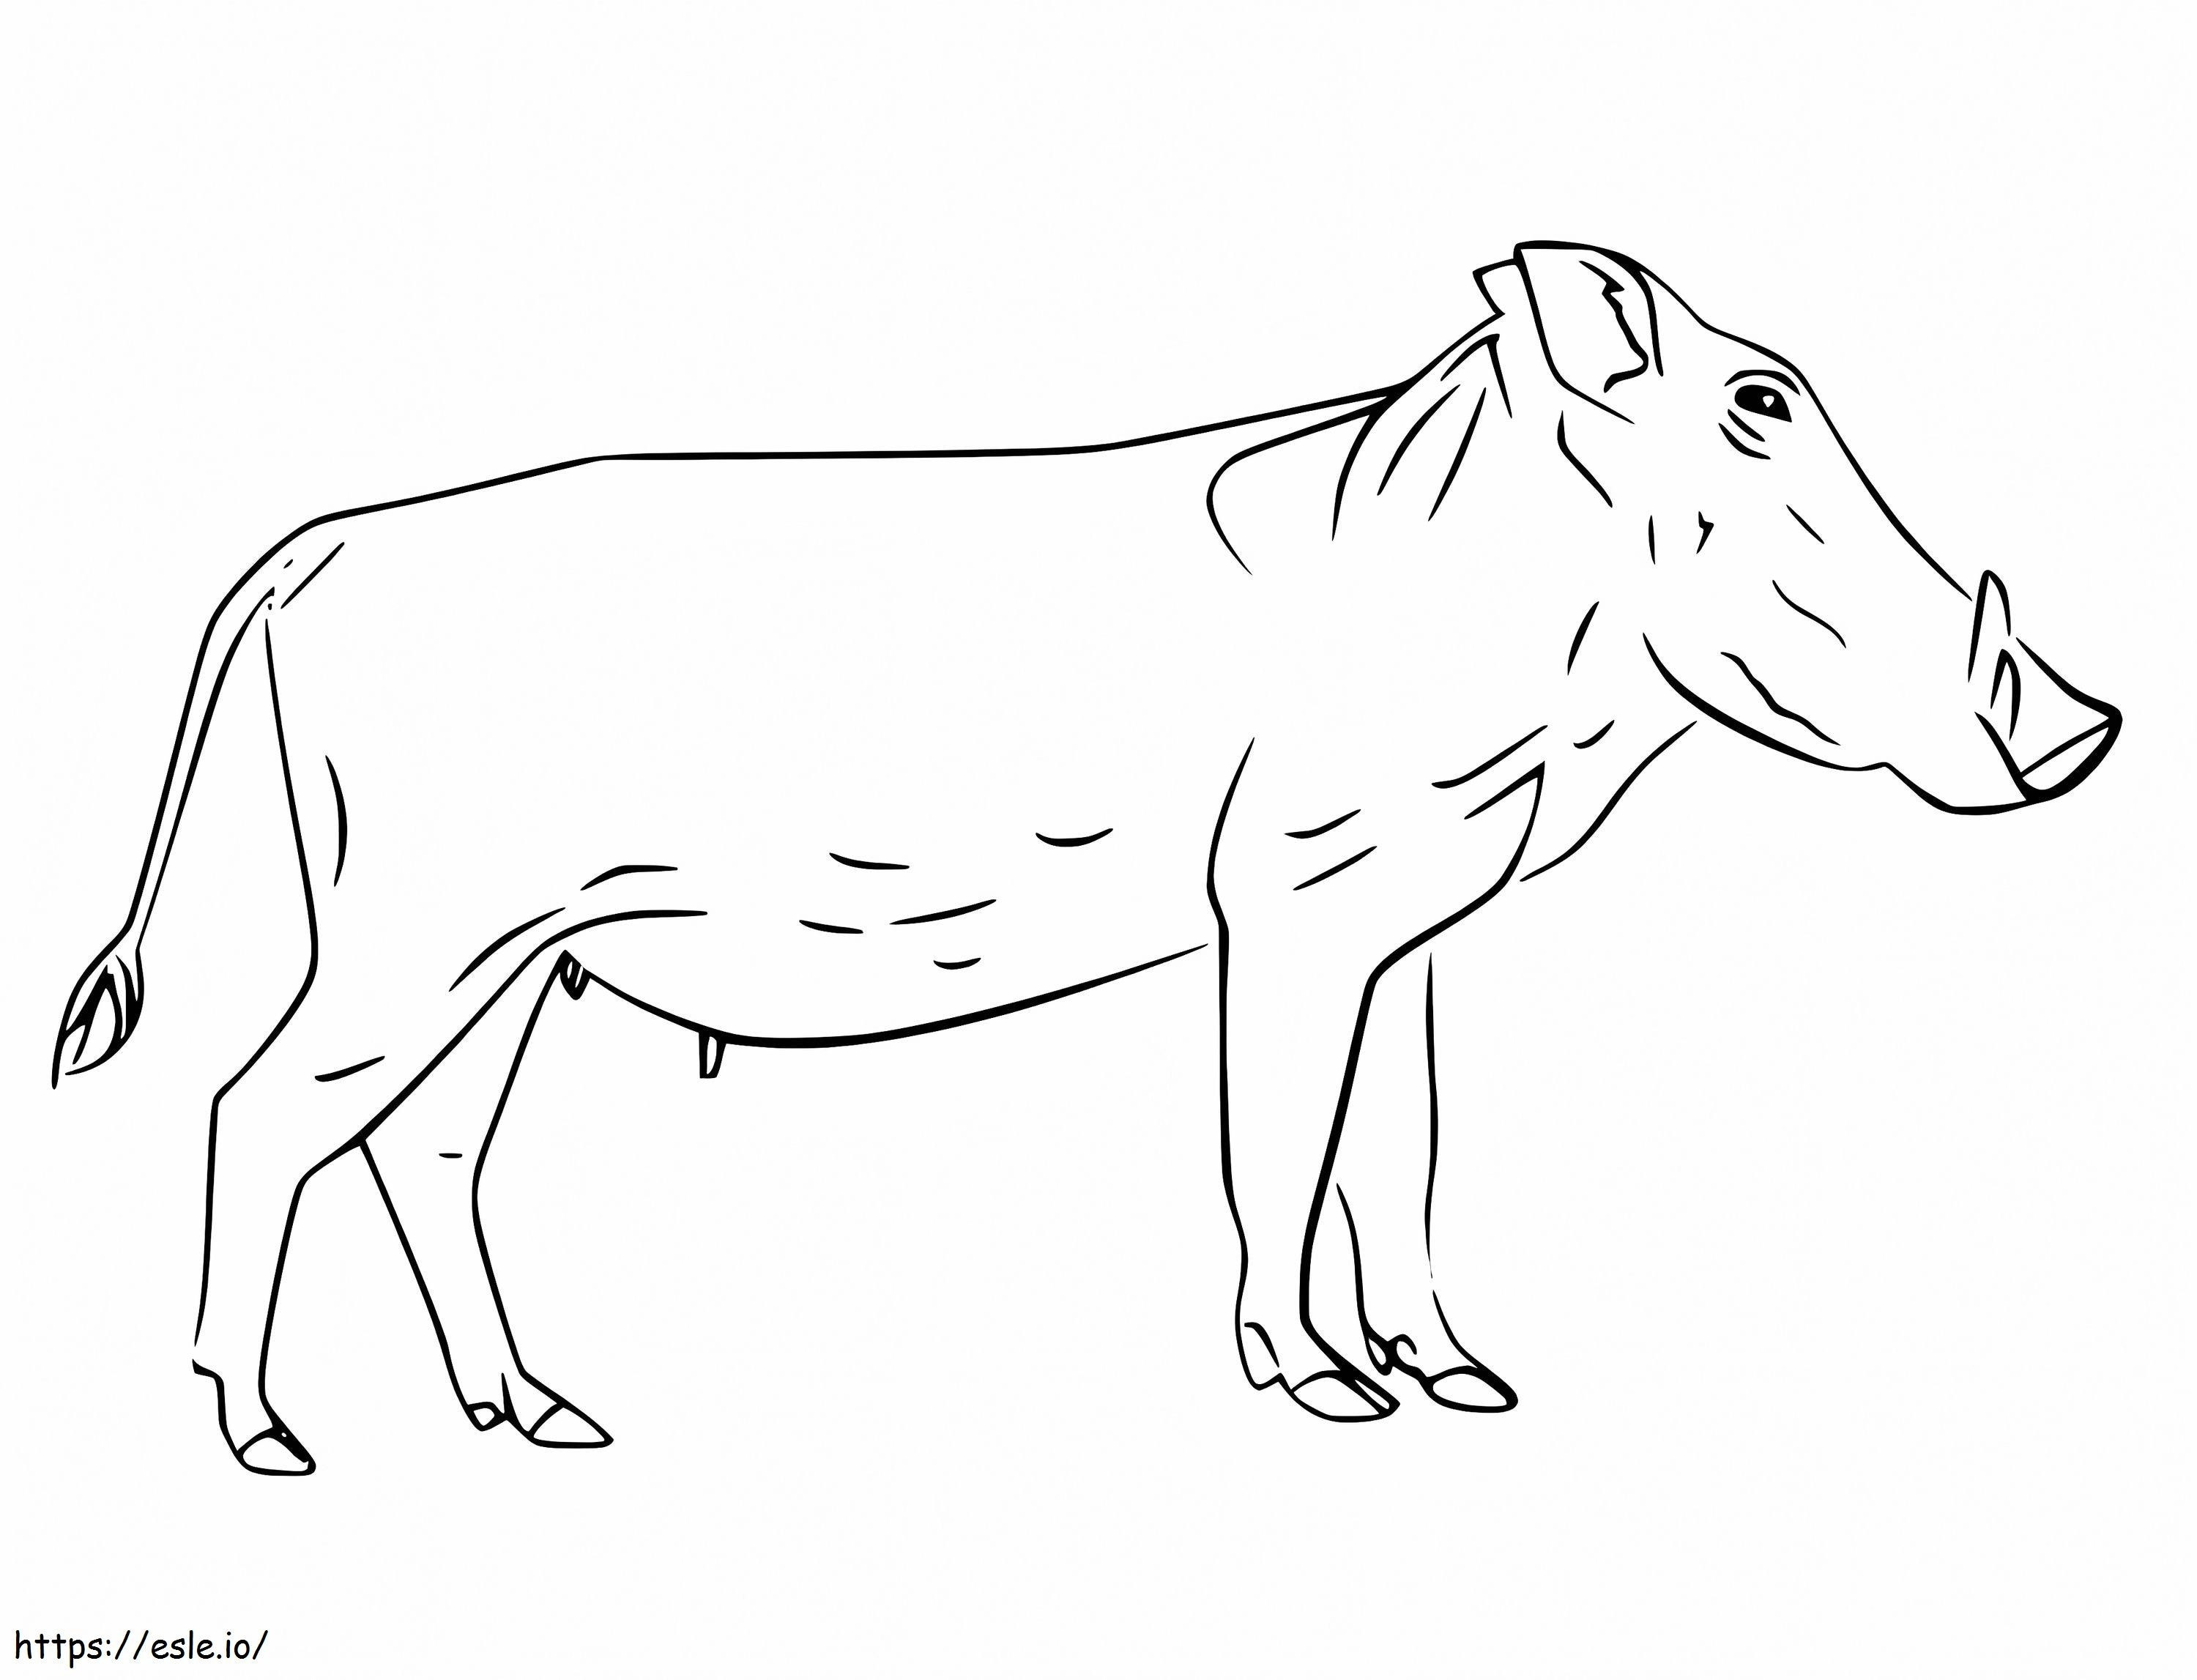 Warzenschwein zum ausdrucken ausmalbilder